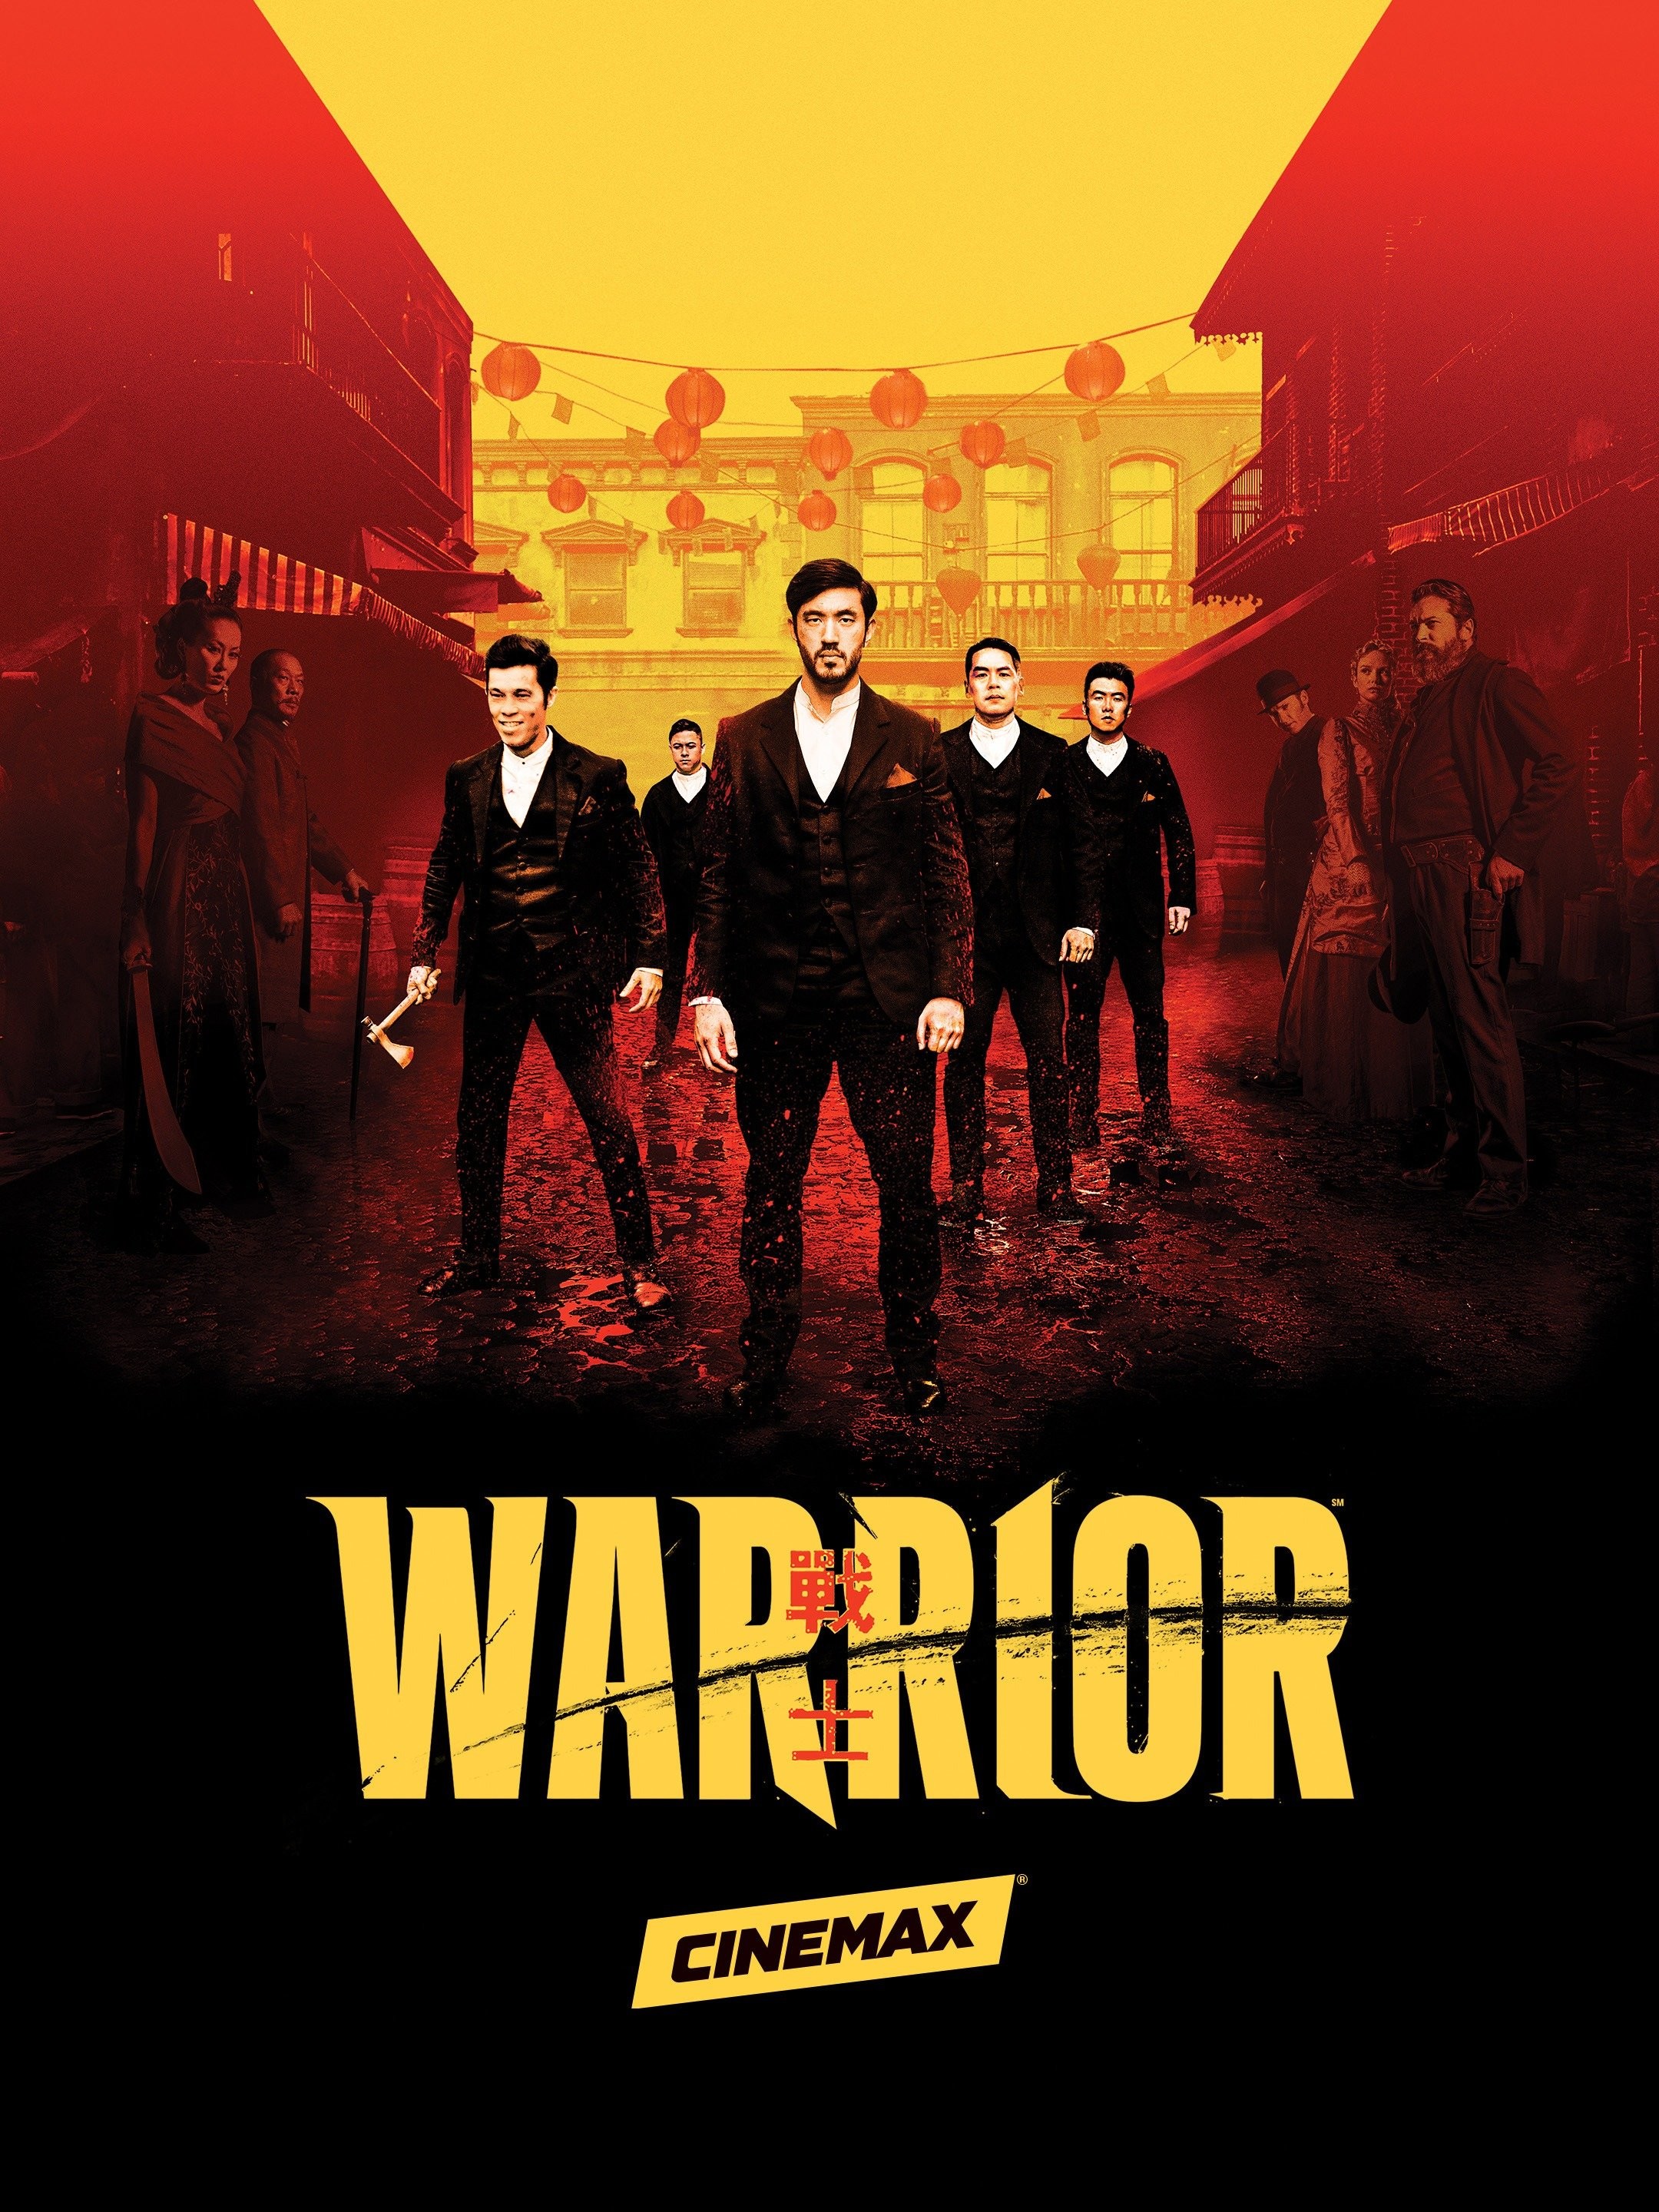 Warrior Season 4 Release Date, Storyline, Cast Members, Trailer